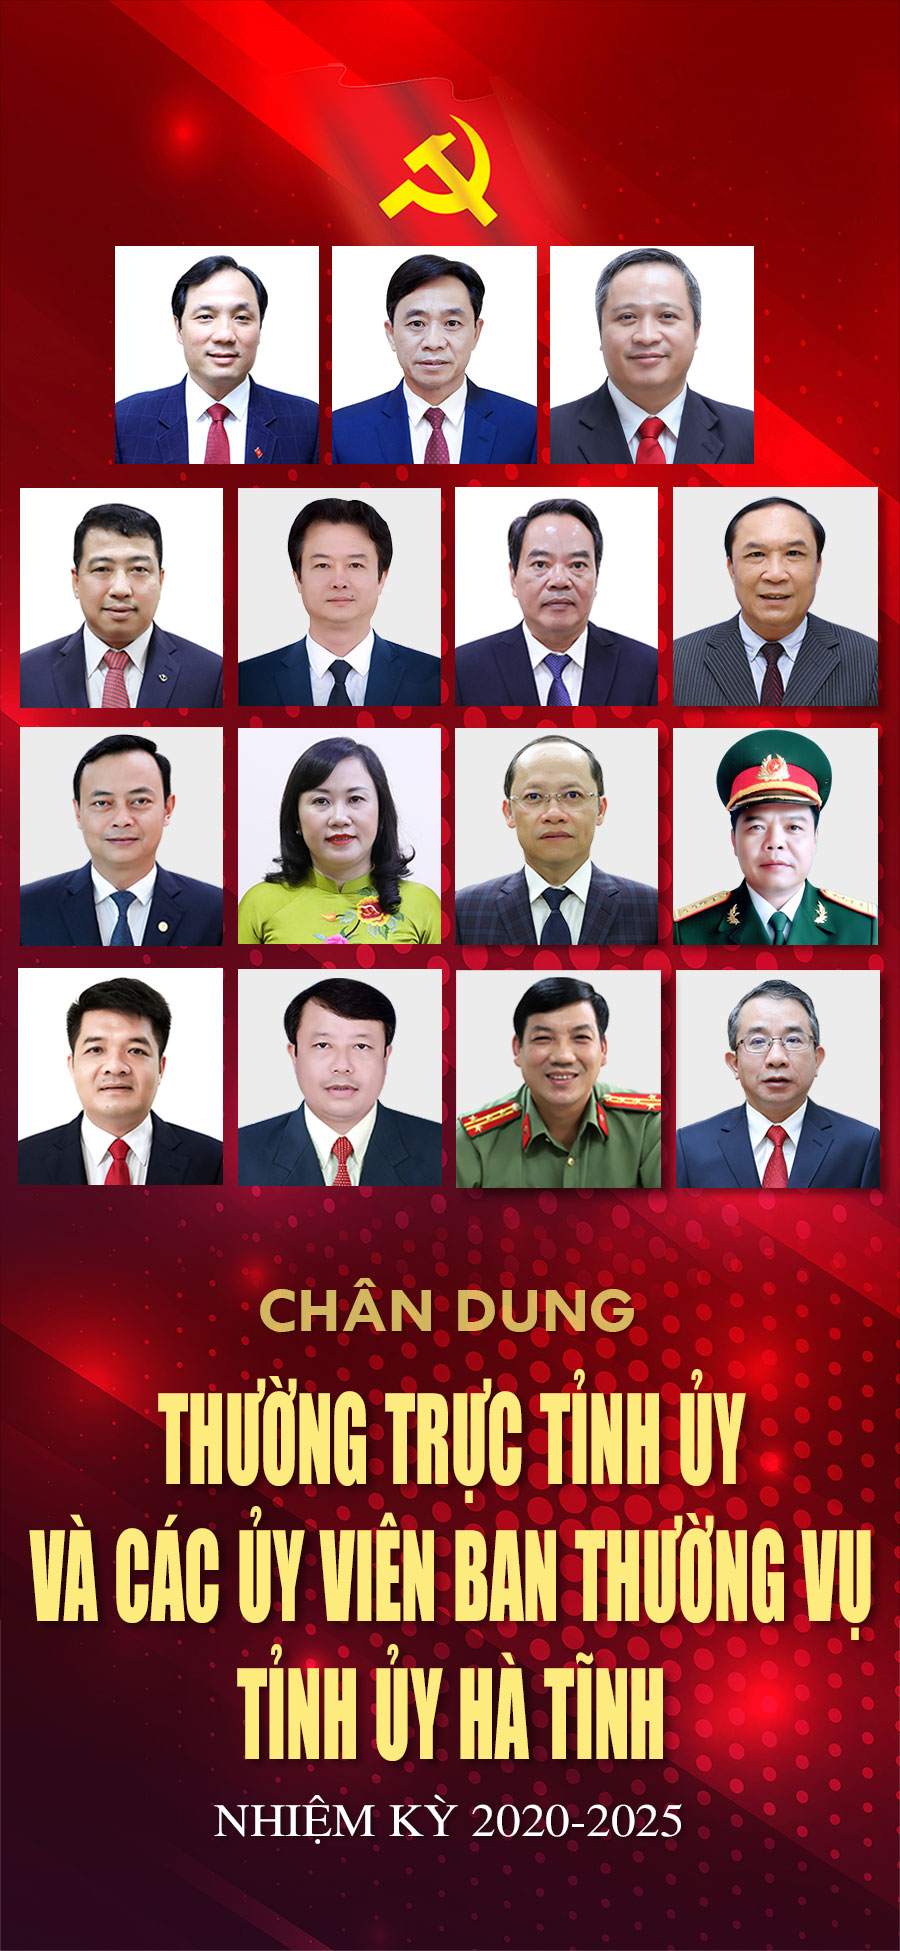 Chân dung các Ủy viên Ban Thường vụ Tỉnh ủy Hà Tĩnh nhiệm kỳ 2020-2025